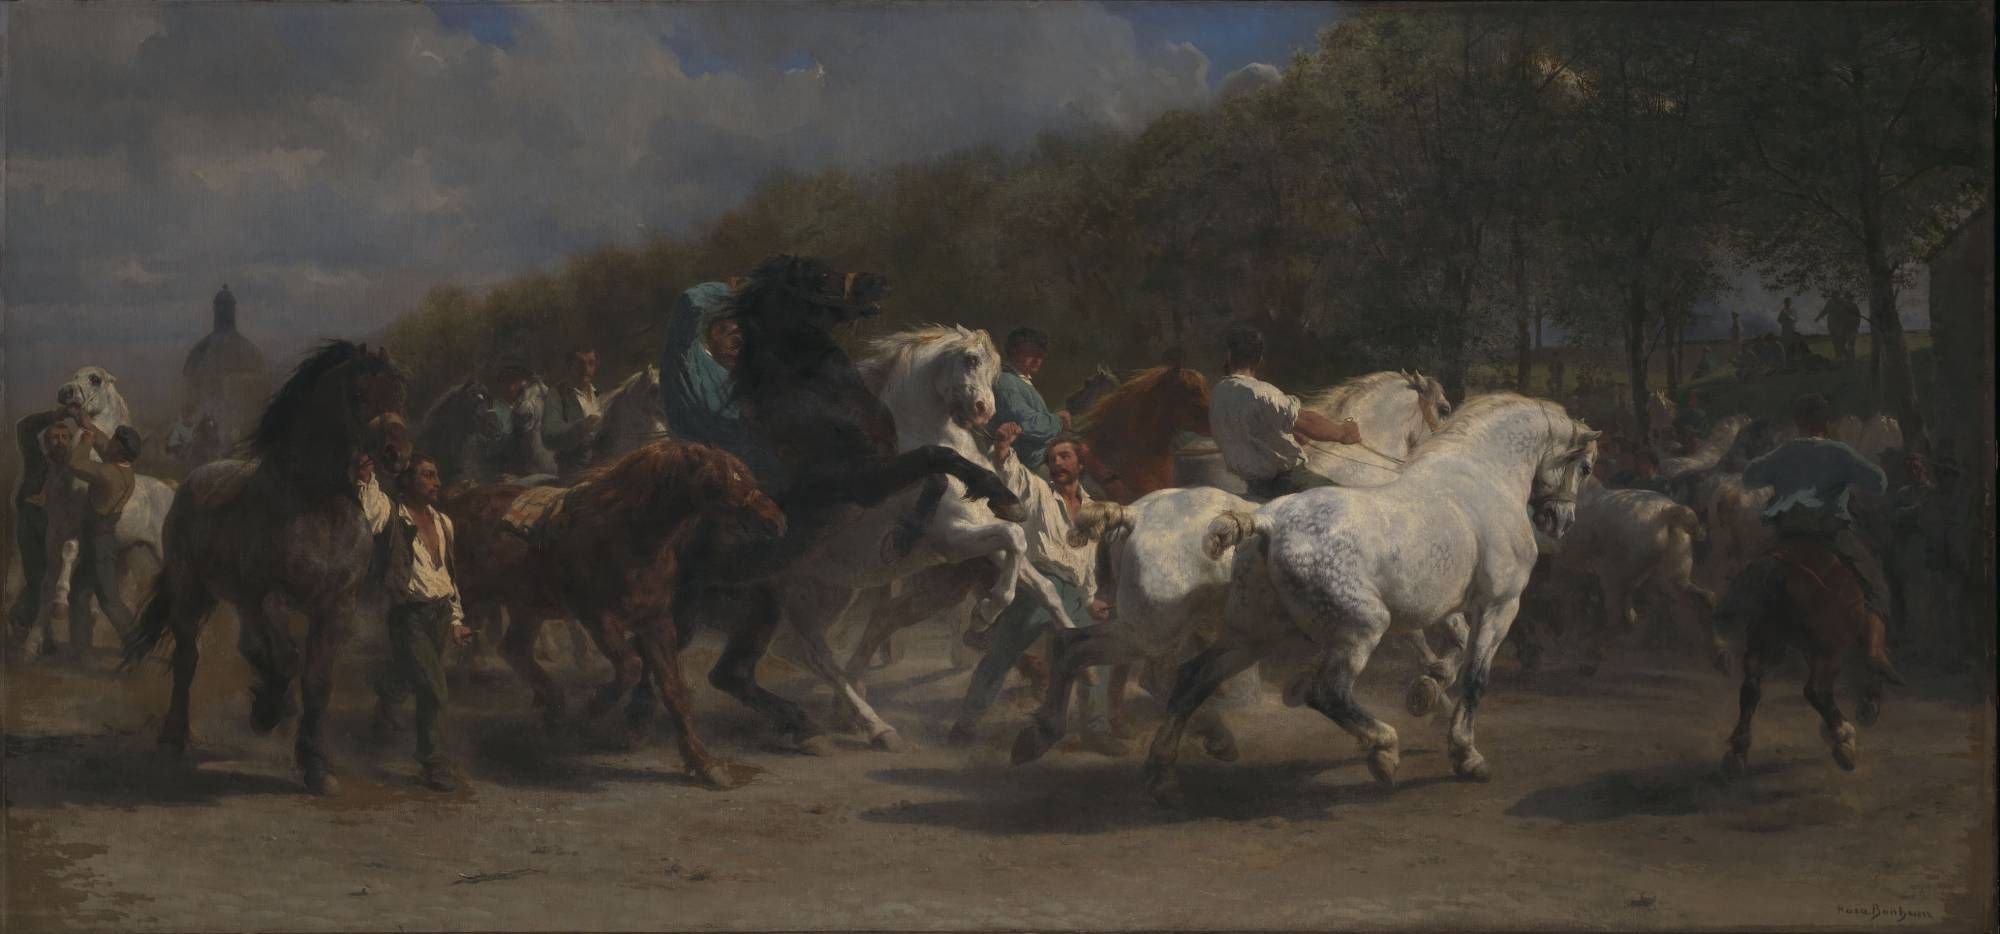 Rosa Bonheur, Le Marché aux chevaux, 1855, huile sur toile.